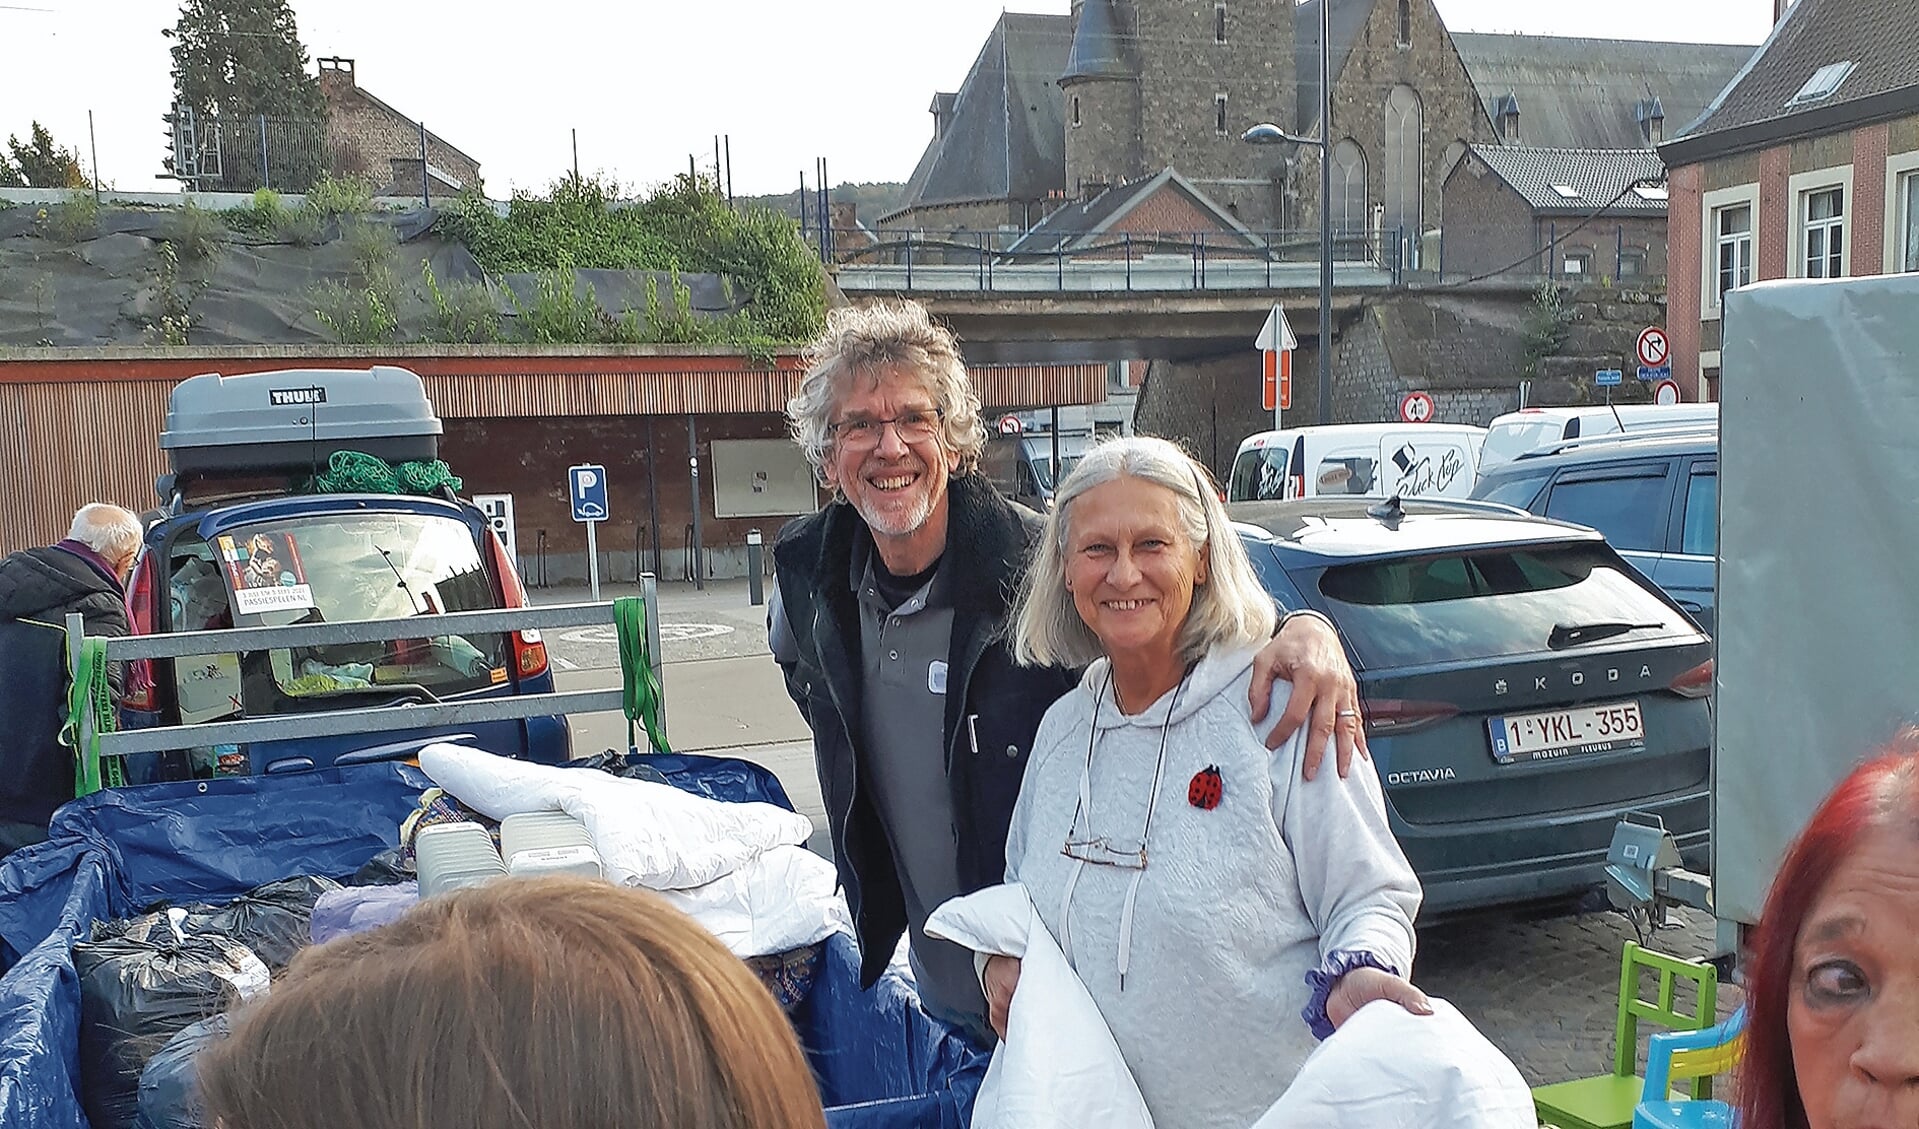 Anita Peeters en Jaap Gerssen staan op een parkeerplaats kleding uit te delen.